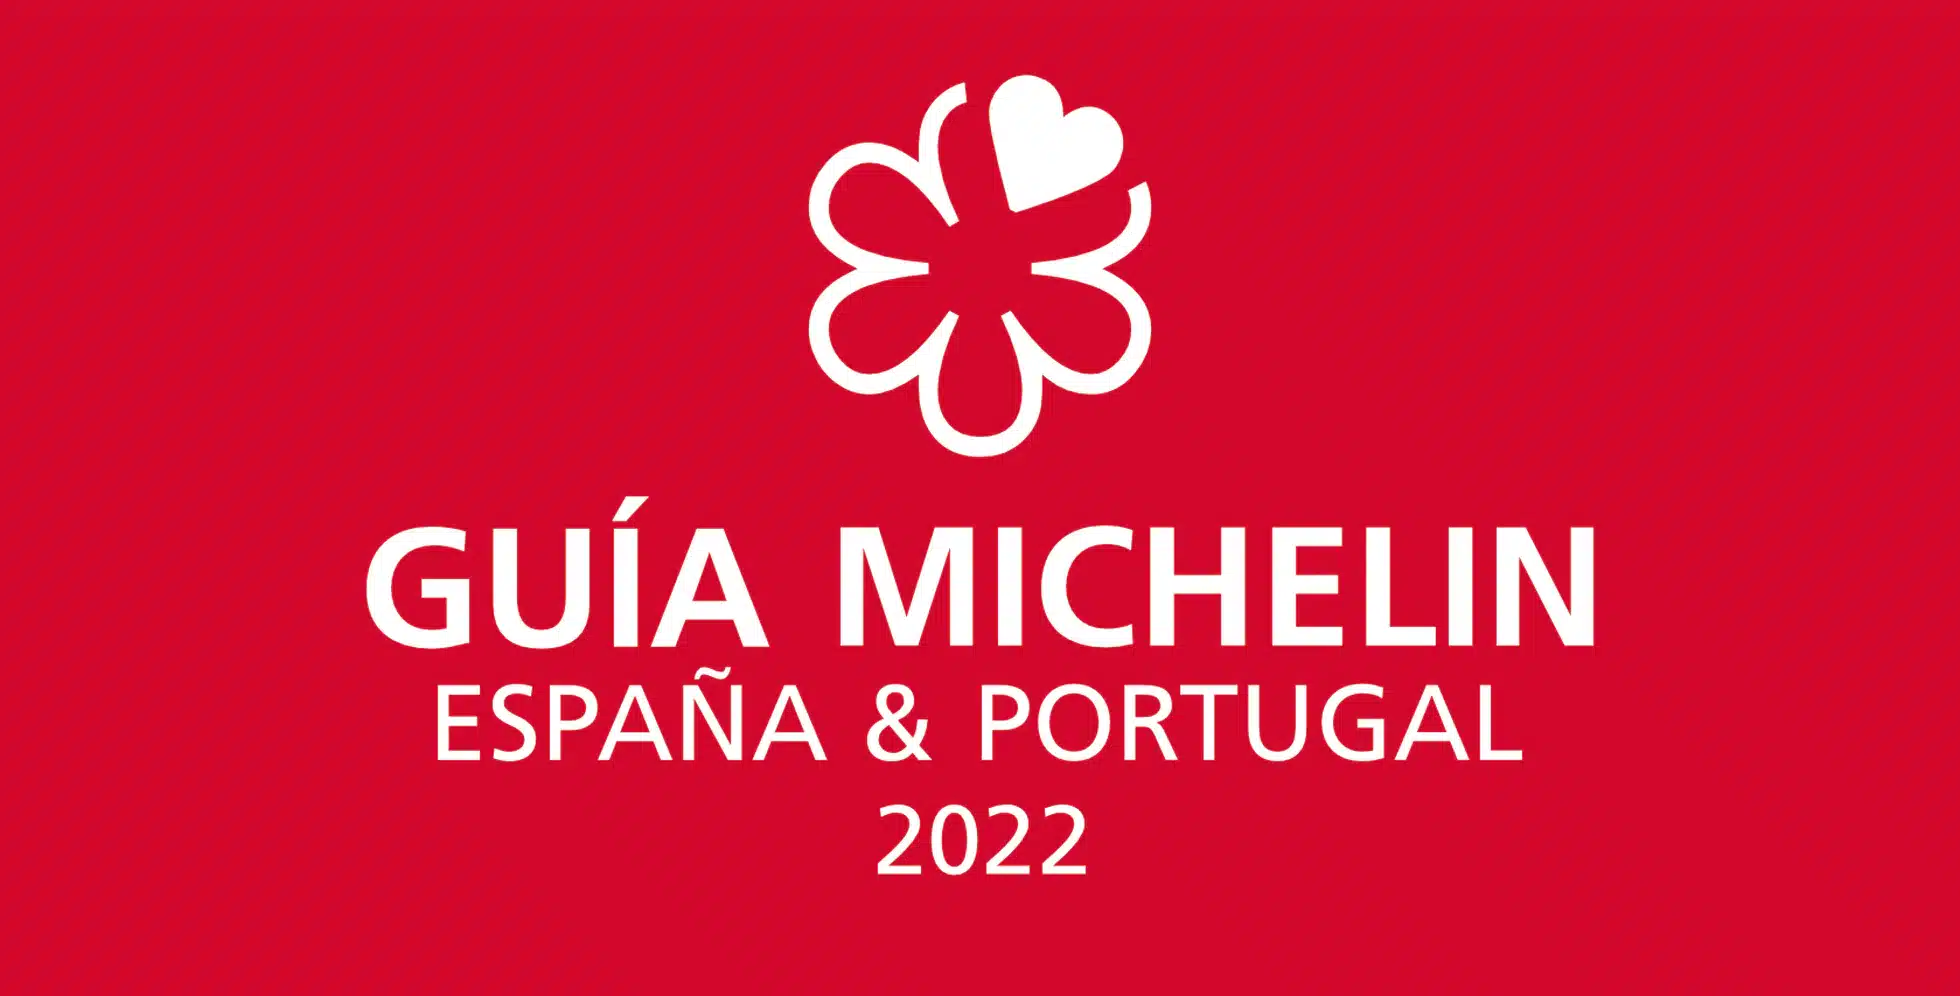 Estas son las nuevas estrellas de la Guía Michelin en España y Portugal para 2022